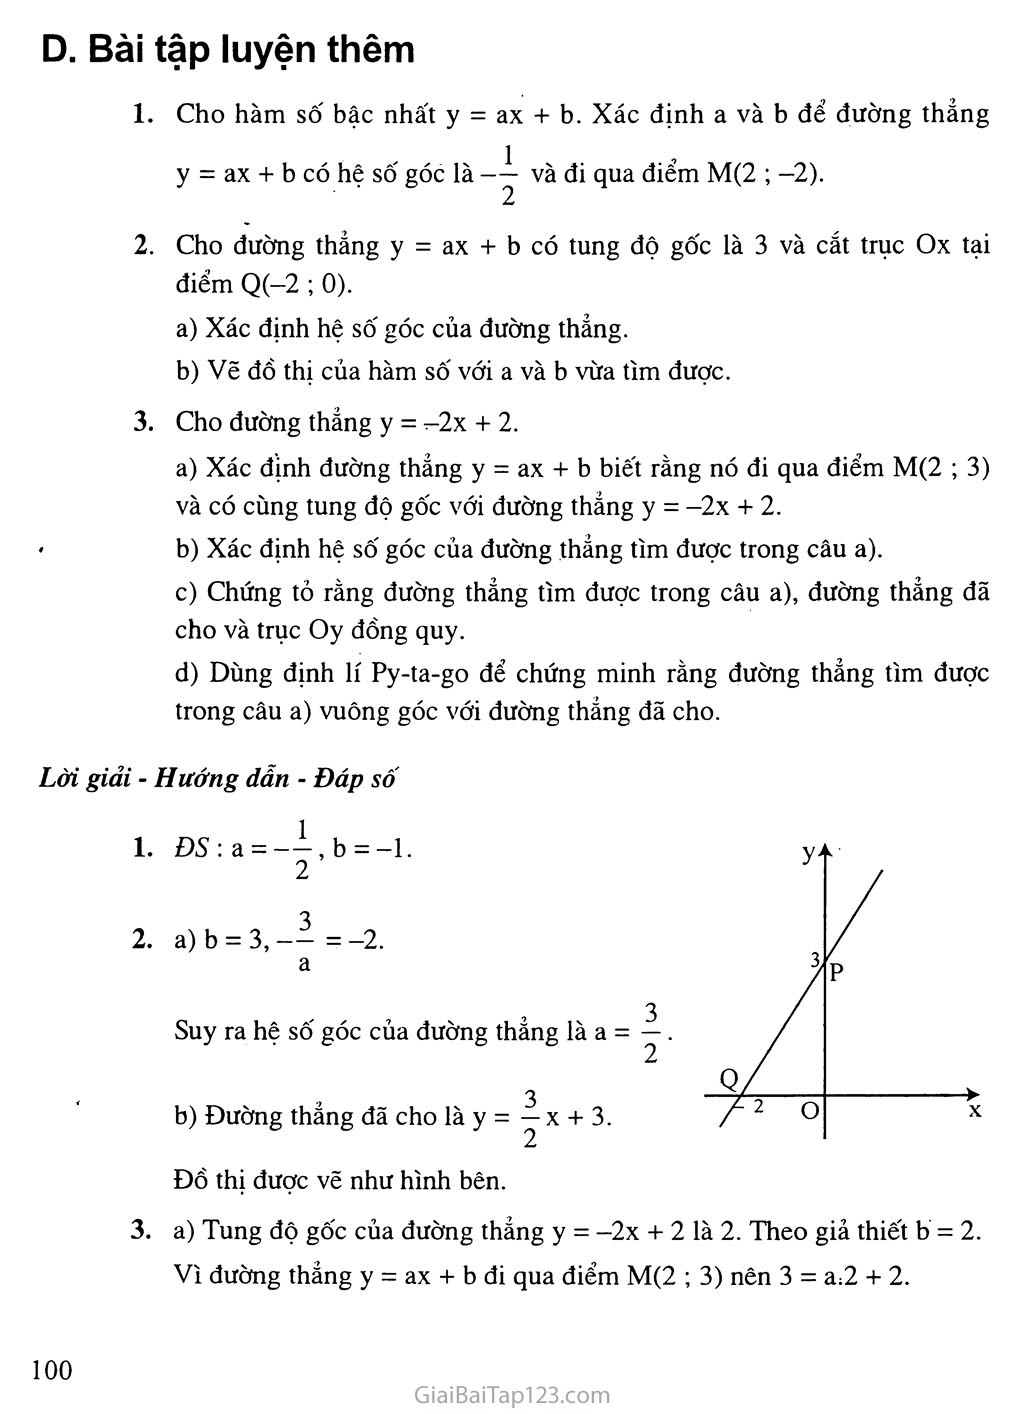 Bài 5. Hệ số góc của đường thẳng y = ax + b (a khác 0) trang 6